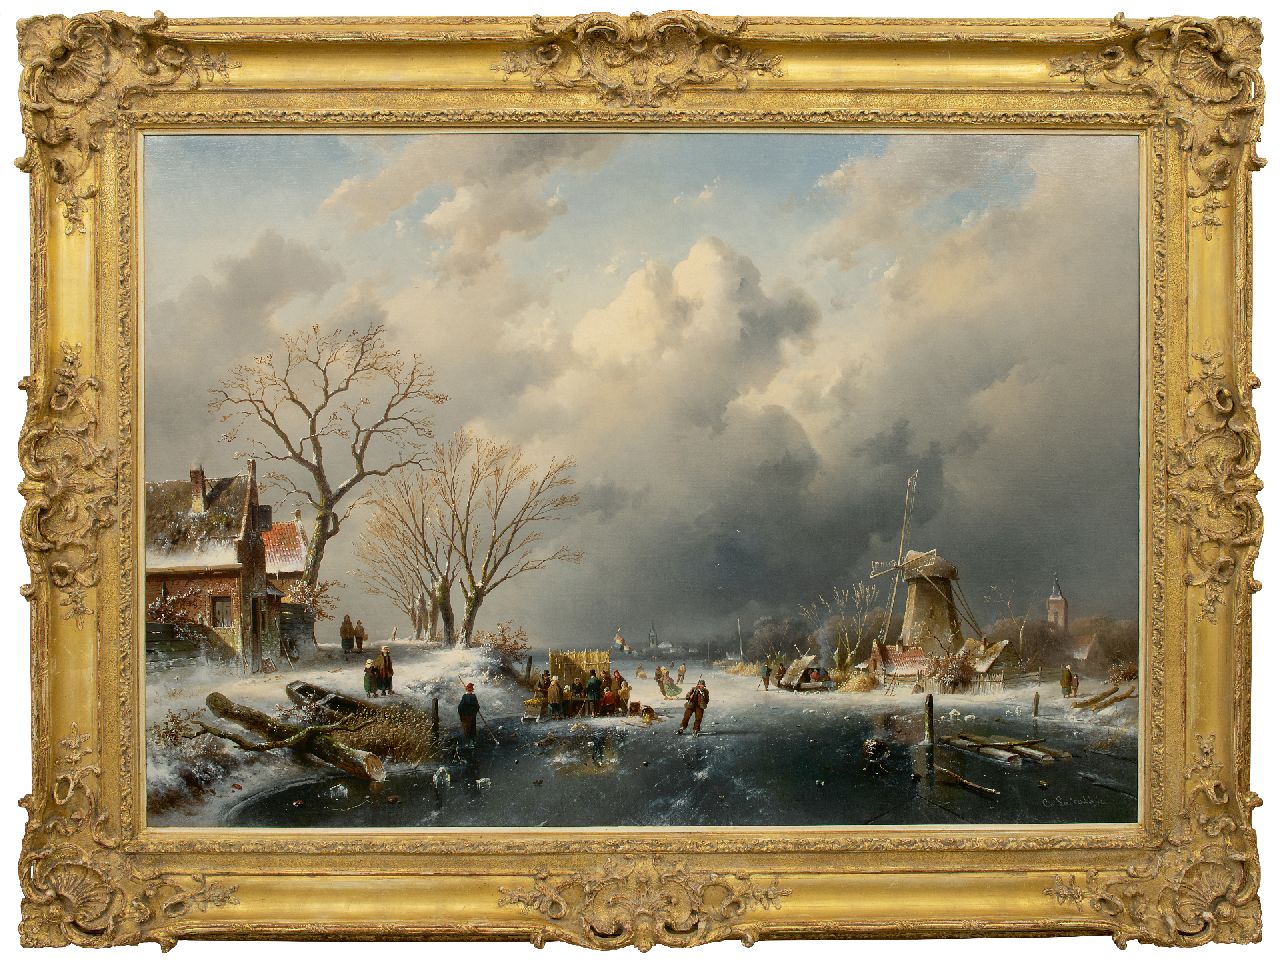 Leickert C.H.J.  | 'Charles' Henri Joseph Leickert, Hollandse winter met koek en zopie, olieverf op doek 98,0 x 141,0 cm, gesigneerd rechtsonder en gedateerd 1862